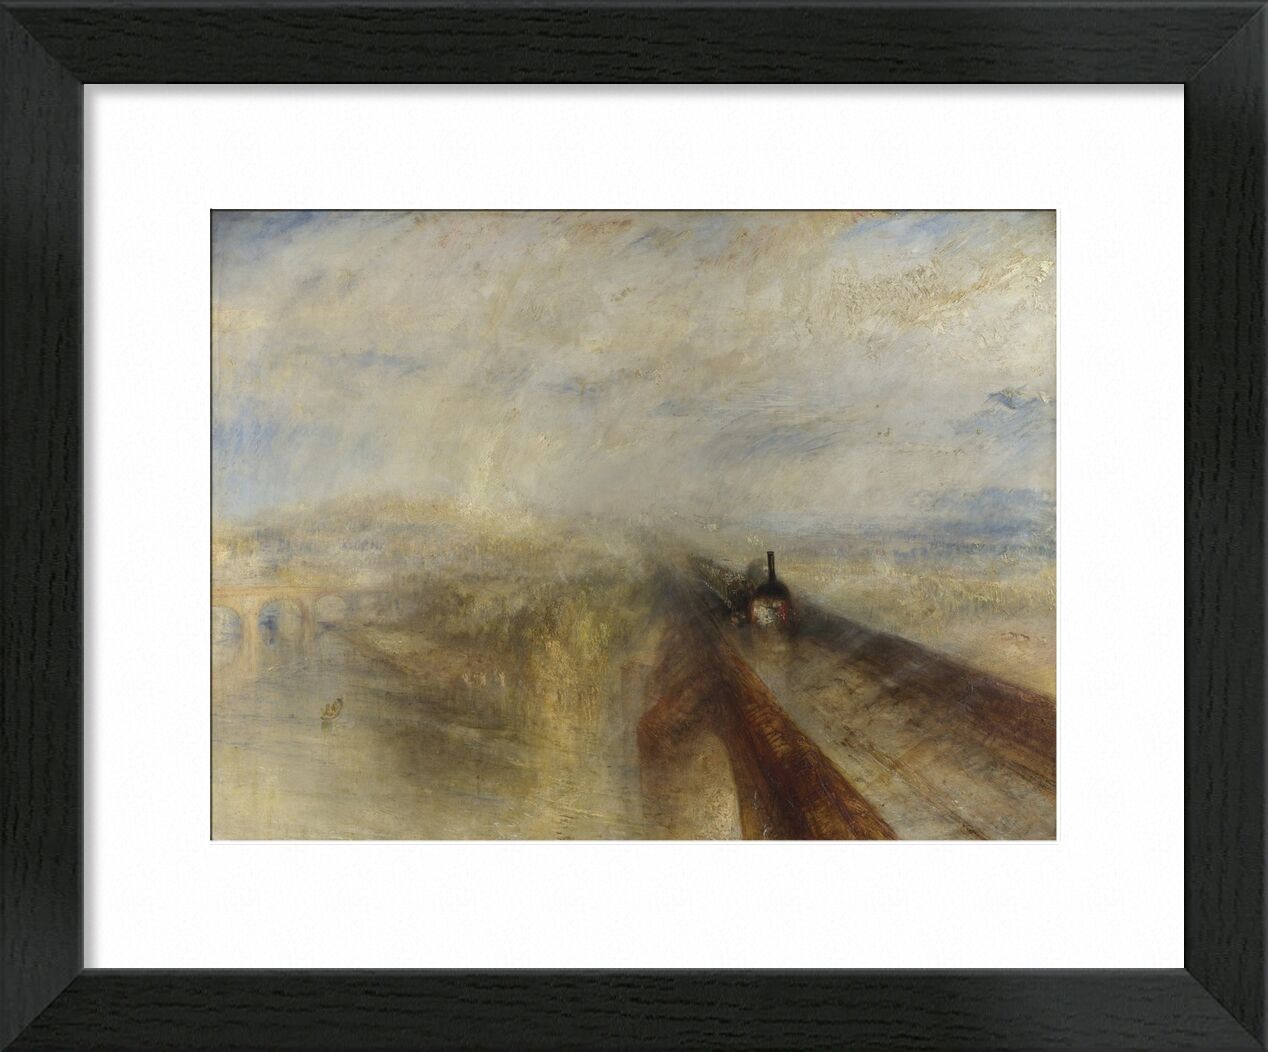 Rain, Steam and Speed – The Great Western Railway - WILLIAM TURNER 1844 von Bildende Kunst, Prodi Art, Westen, Dampf, Malerei, WILLIAM TURNER, Eisenbahn, Geschwindigkeit, Regen